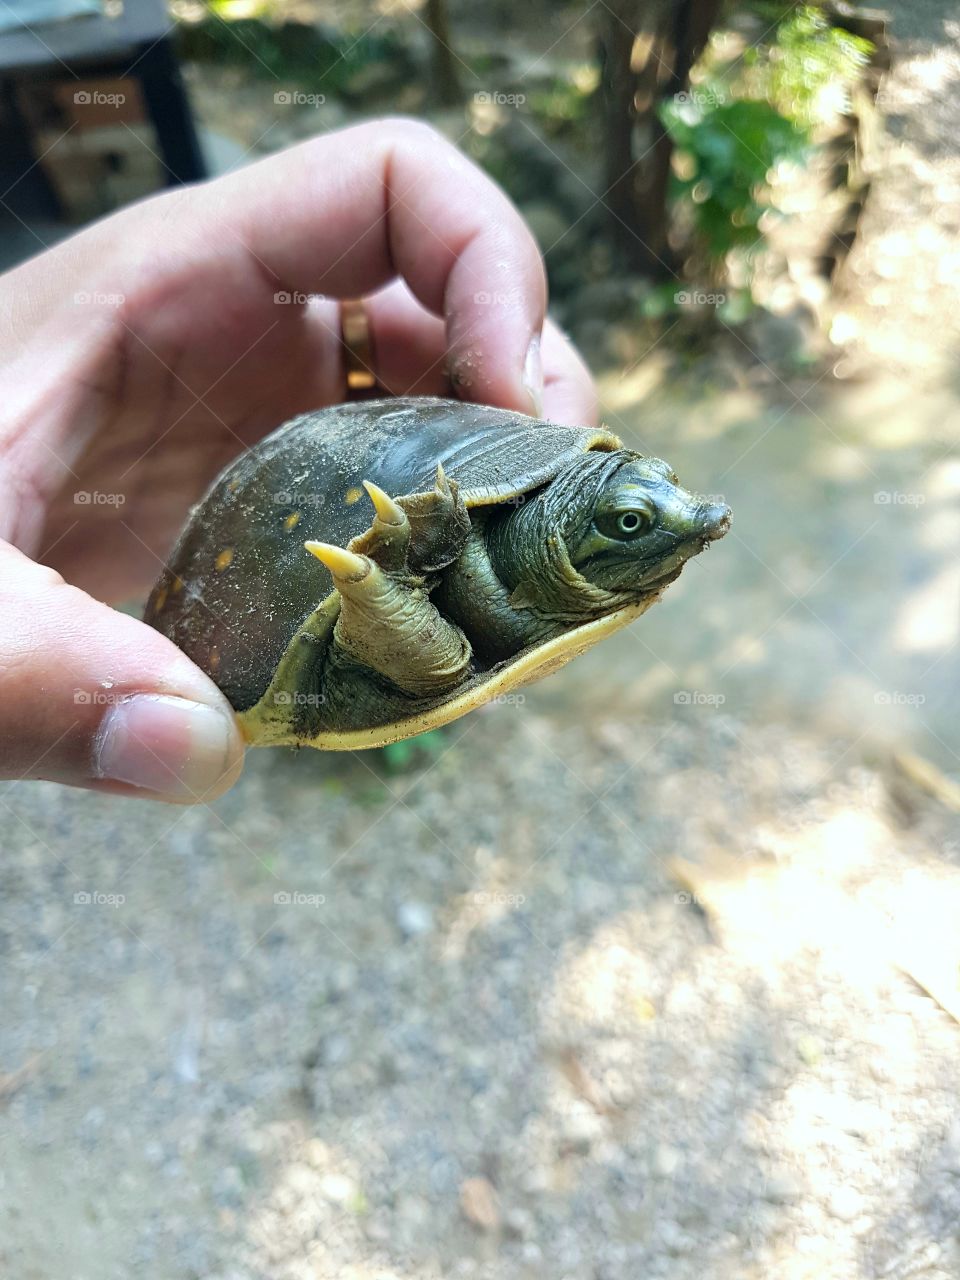 My cute little pet Turtle